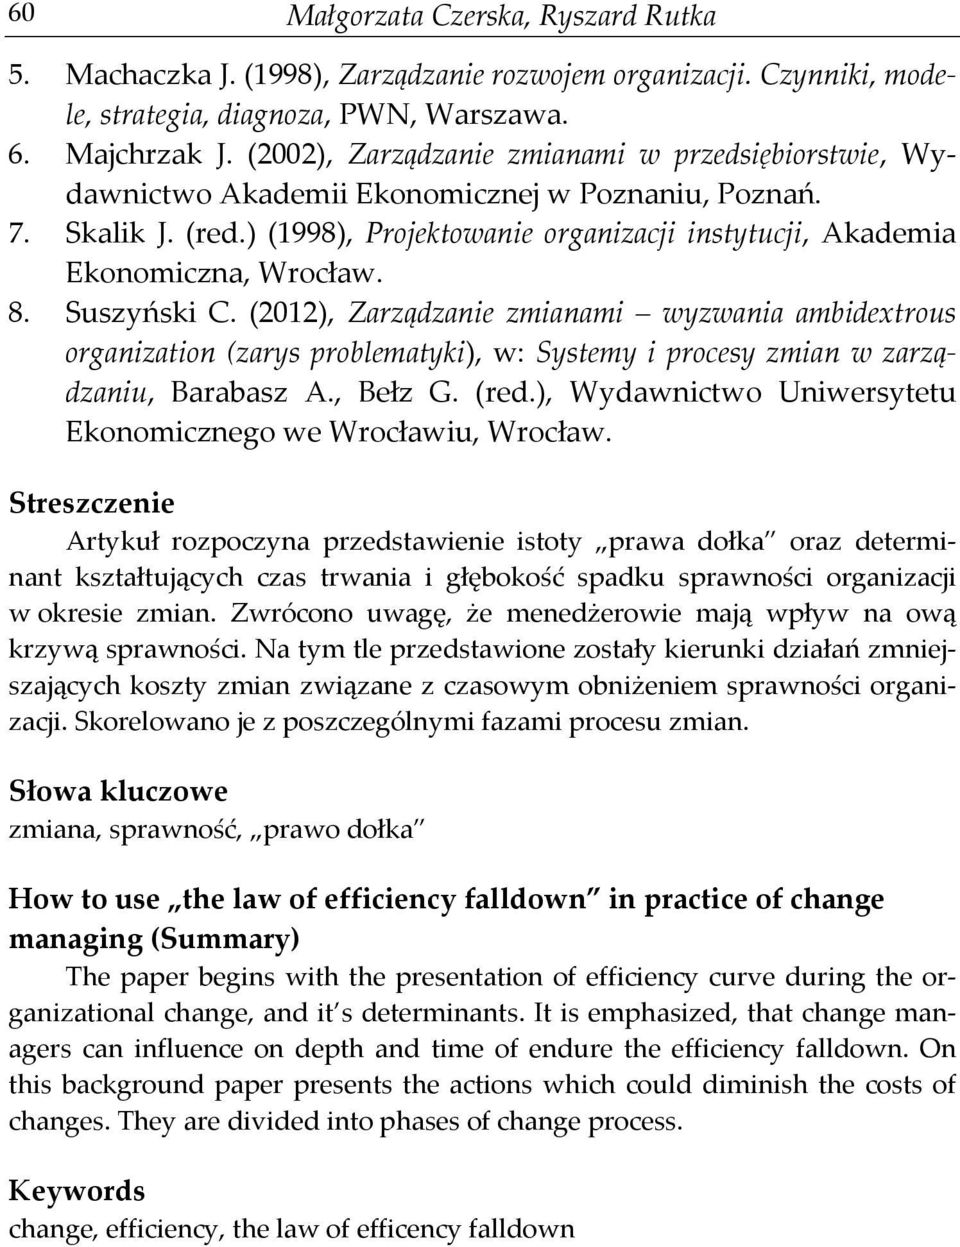 8. Suszyński C. (2012), Zarządzanie zmianami wyzwania ambidextrous organization (zarys problematyki), w: Systemy i procesy zmian w zarządzaniu, Barabasz A., Bełz G. (red.